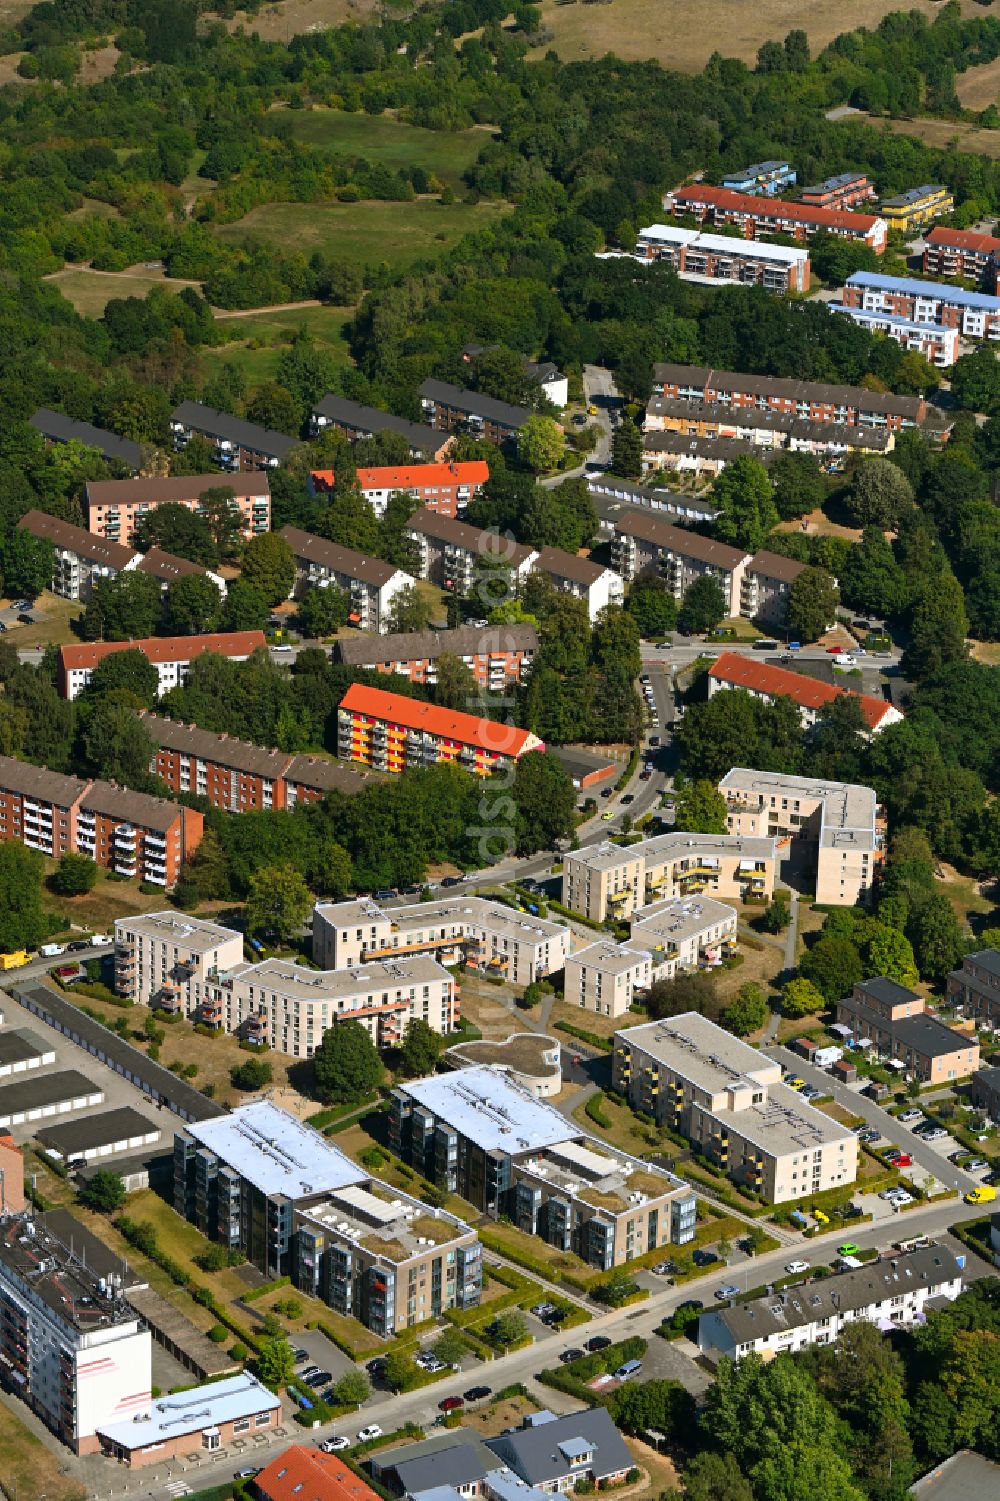 Kücknitz von oben - Wohngebiet der Mehrfamilienhaussiedlung in Kücknitz im Bundesland Schleswig-Holstein, Deutschland